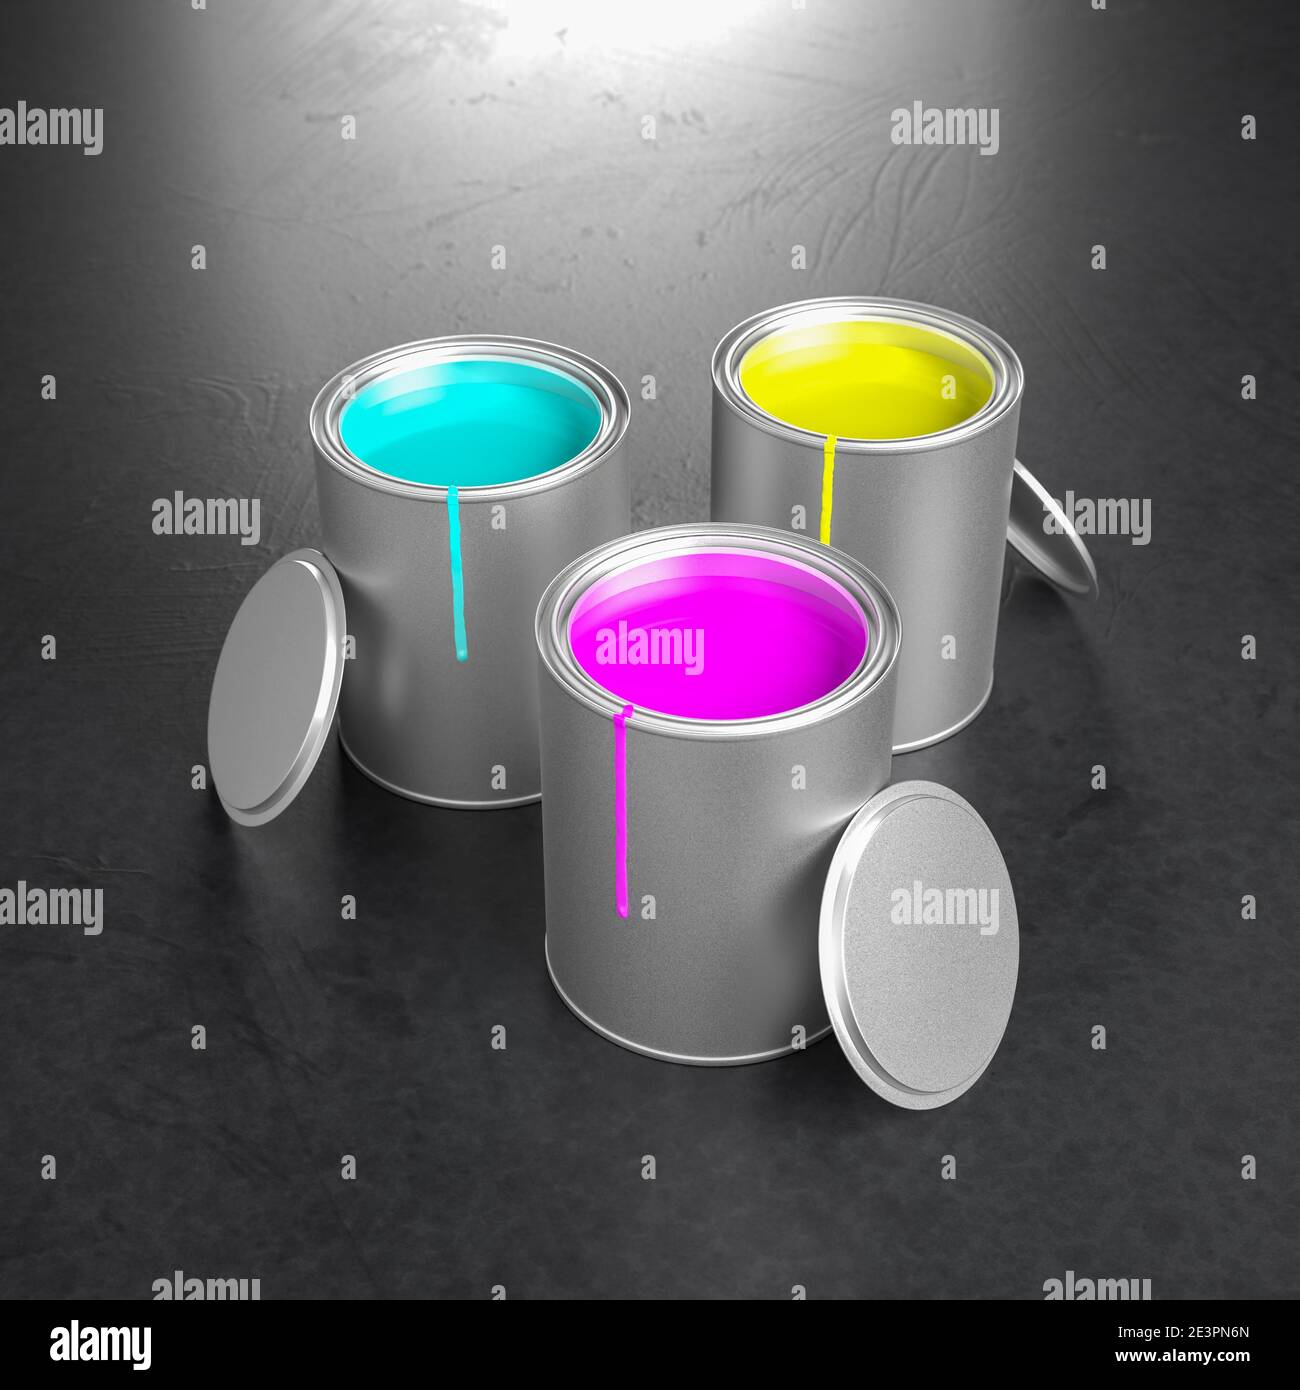 Farbtöpfe mit den CMY-Prozessfarben des subtraktiven Farbmodells: Cyan, Magenta, Gelb. Farbflecken auf den Töpfen, Deckel an die Töpfe gelehnt. Stockfoto